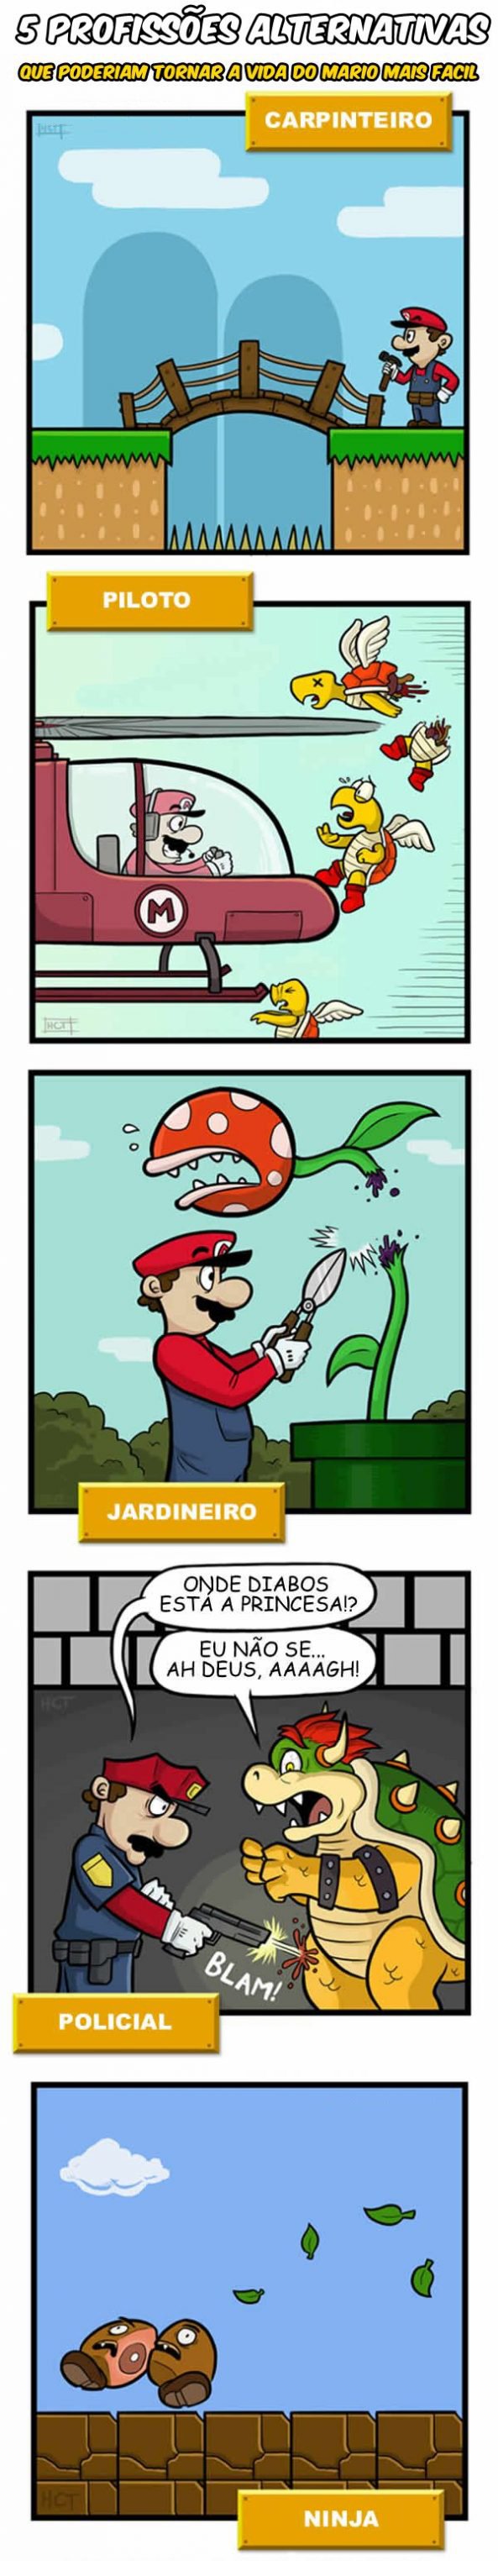 5 profissoes alternativas que poderiam tonar a vida do Mario mais facil